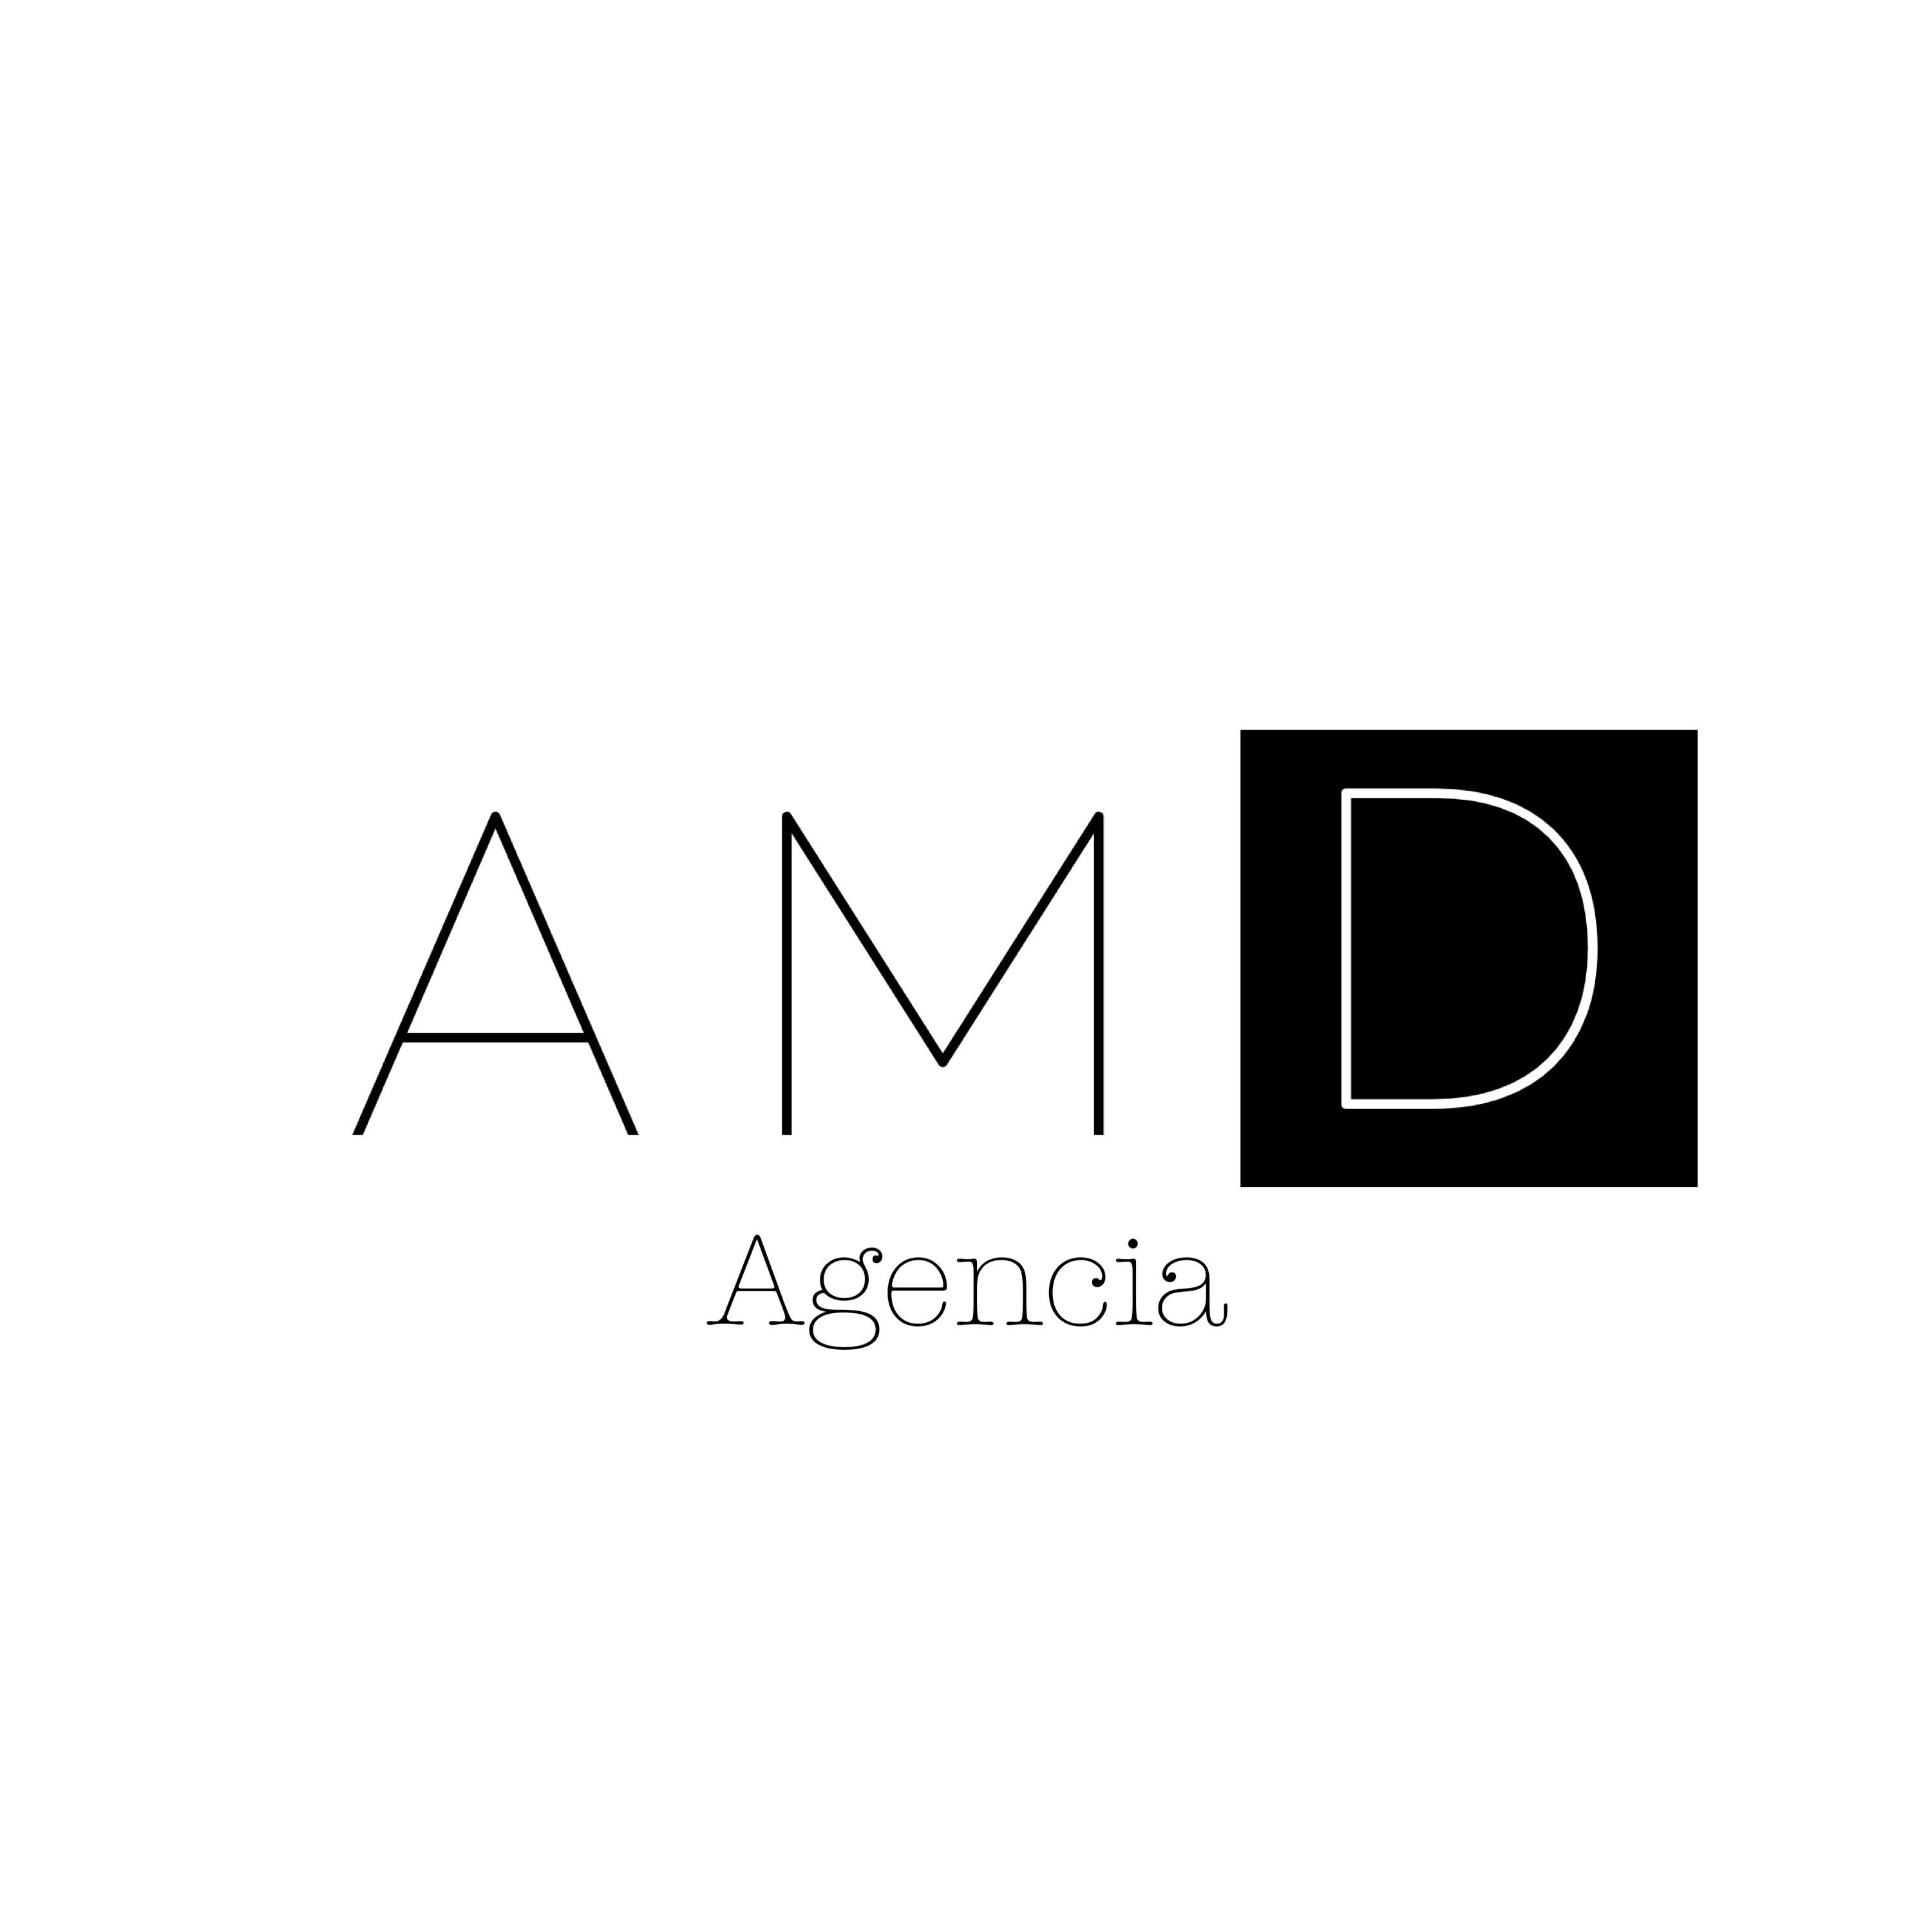 Agencia AMD